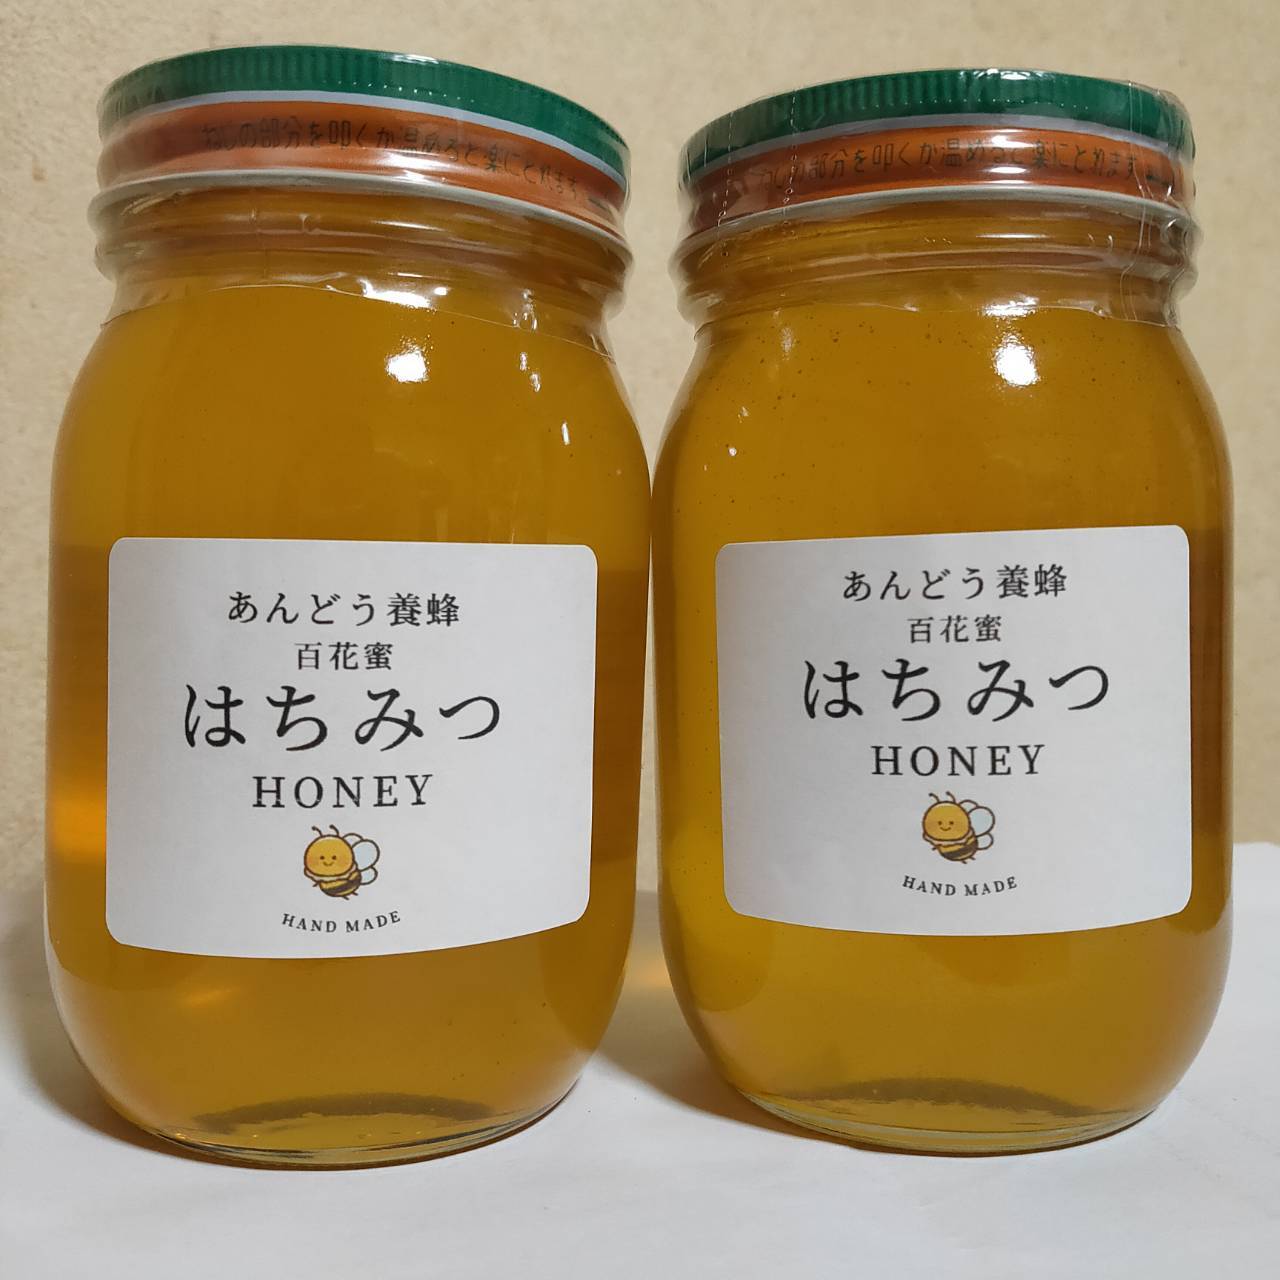 日本蜜蜂 純正ハチミツ 宮崎産  600g×4 得割セット日本蜜蜂はちみつ